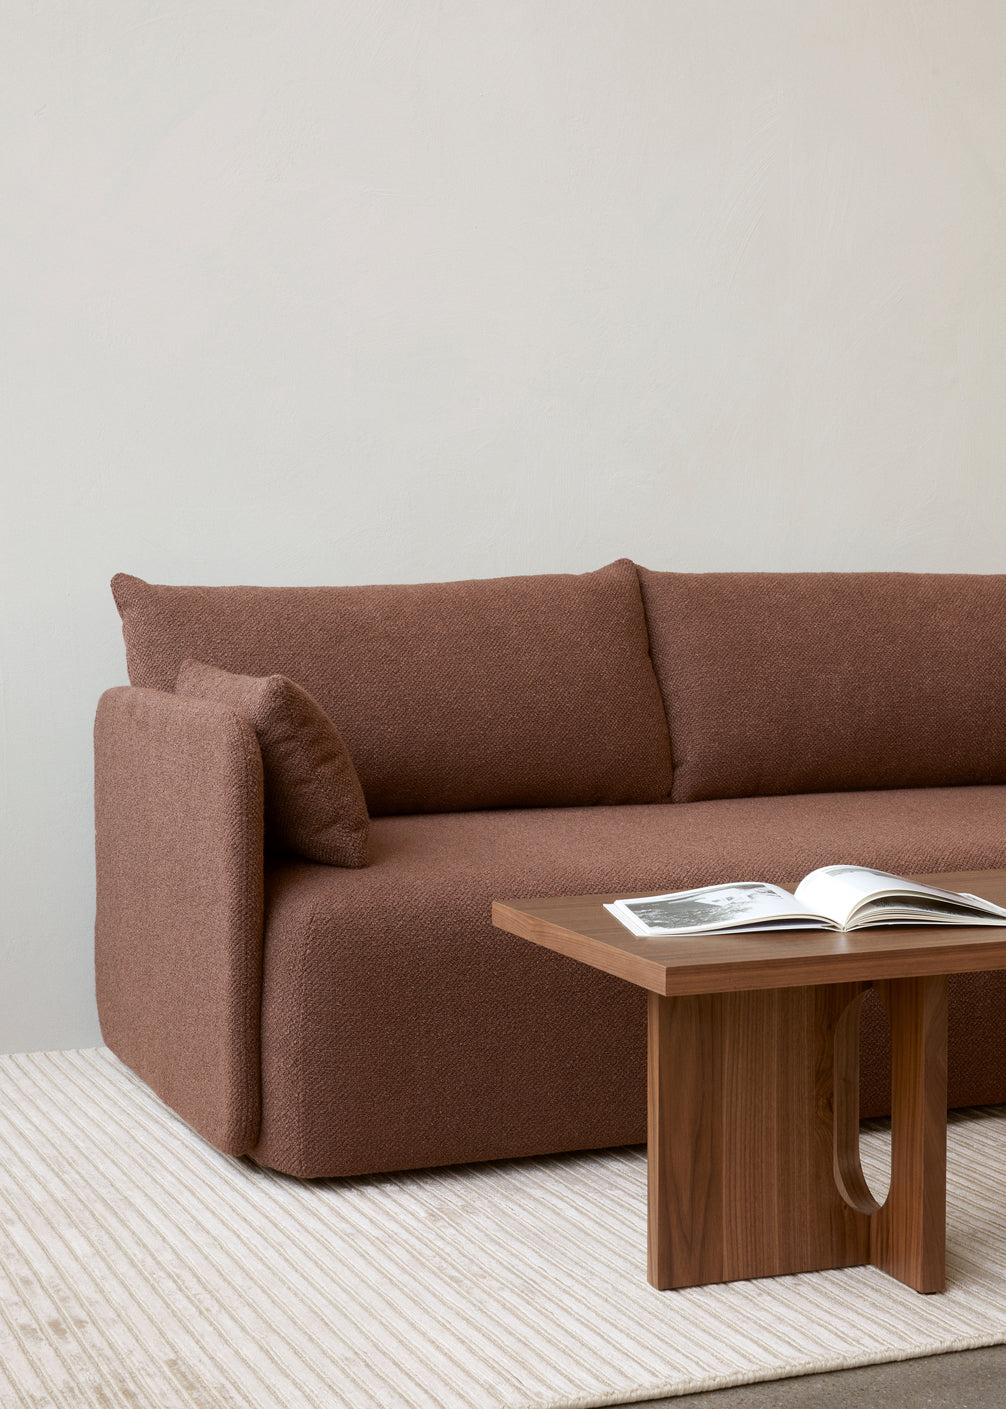 Offset Sofa 2 Seater by Menu / Audo Copenhagen